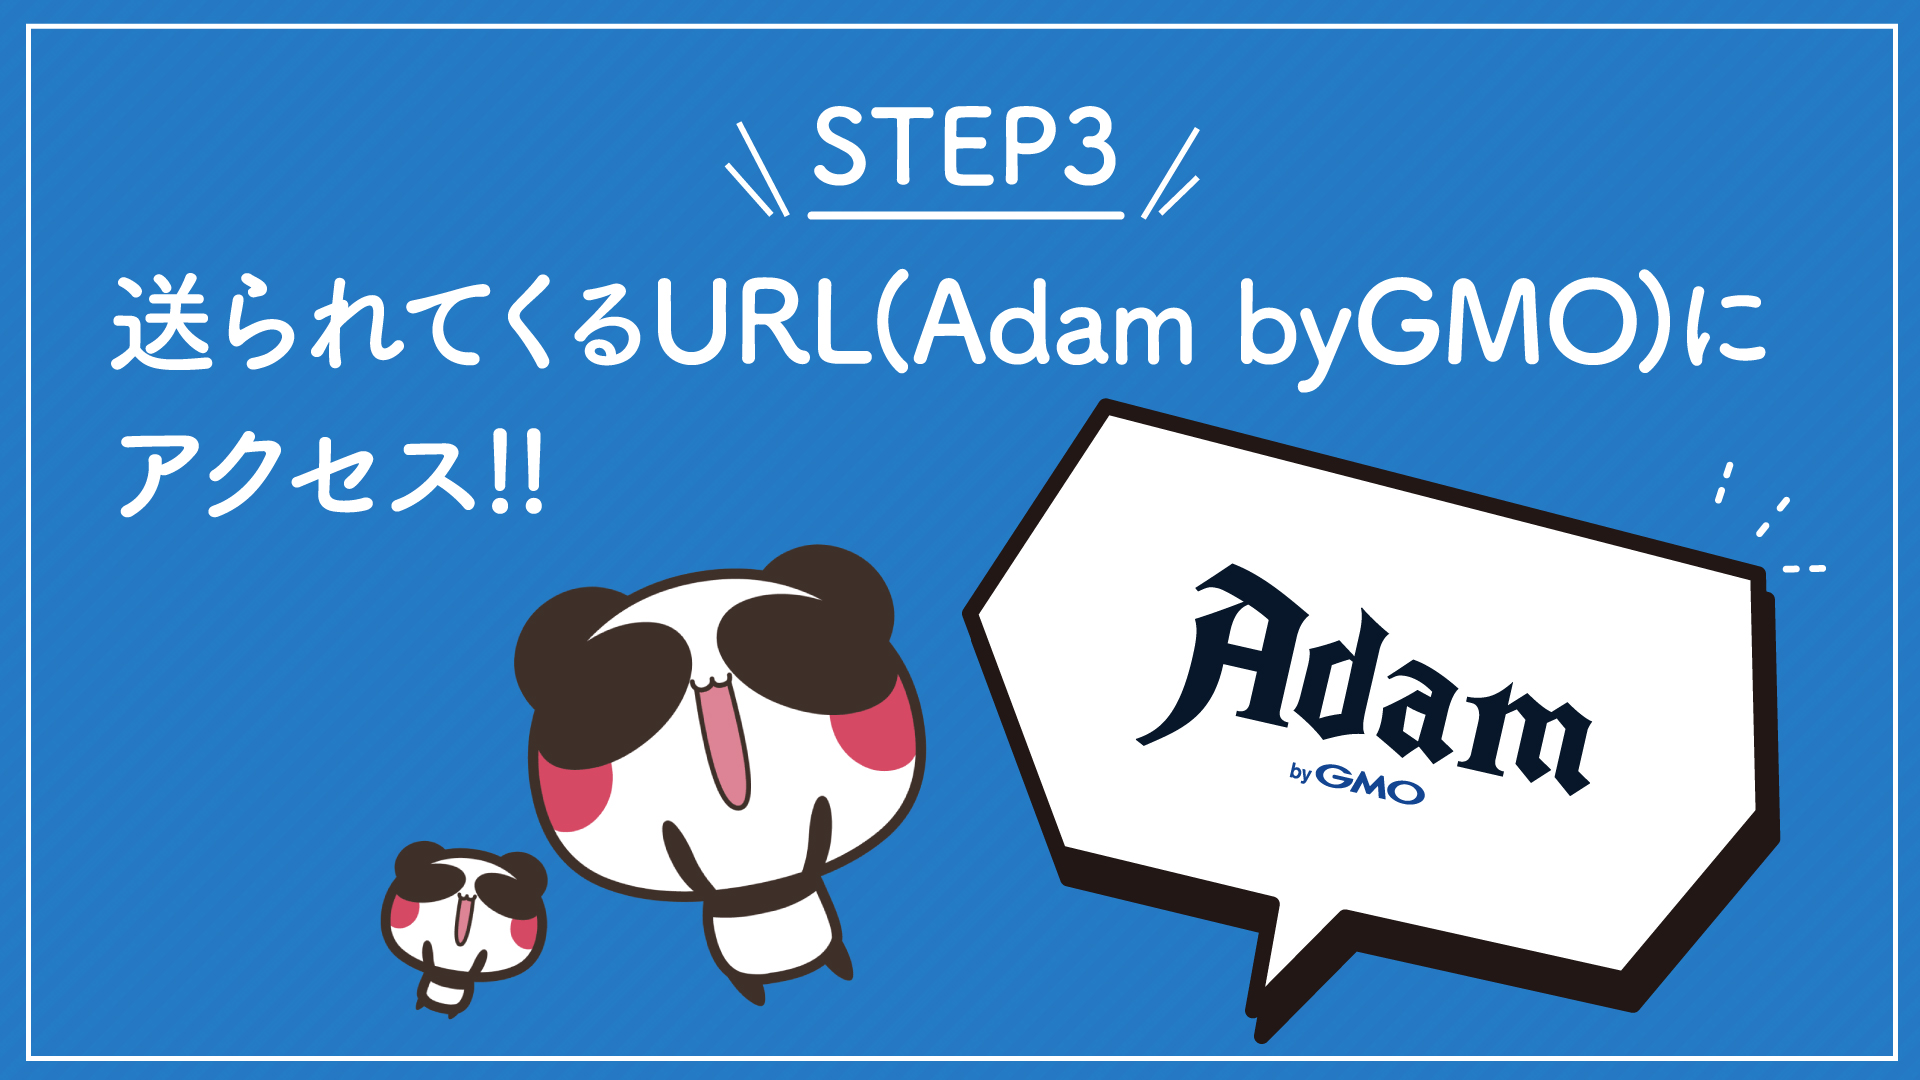 STEP3 送られてくるURL（Adam by GMO）にアクセス！！